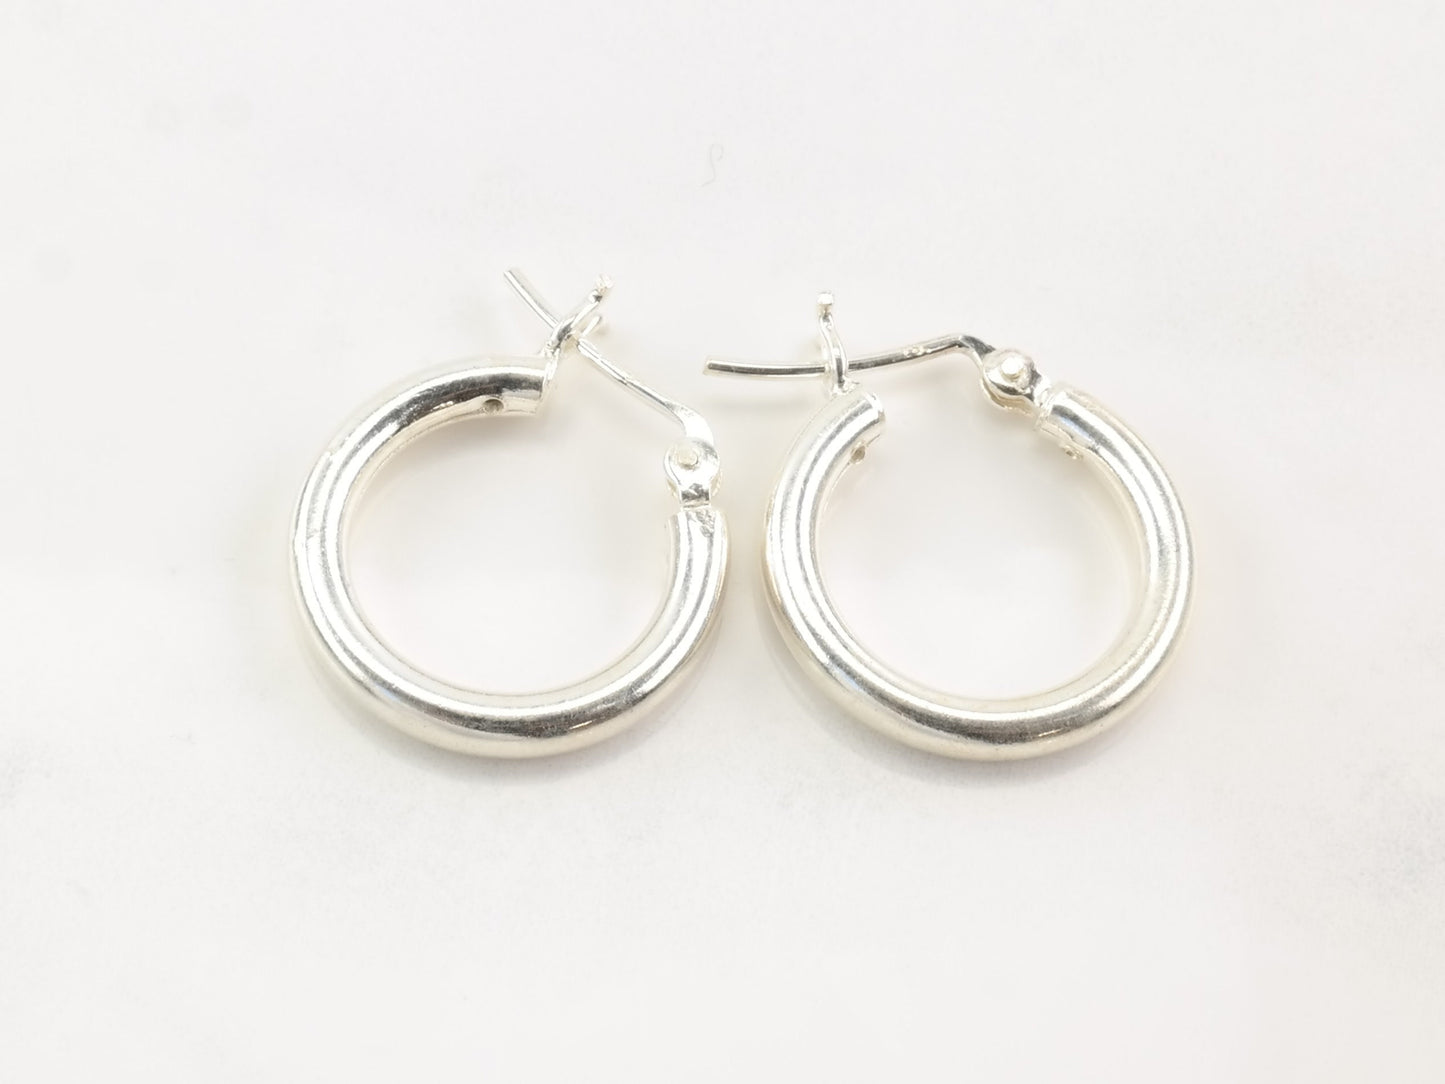 3/4 inch Silver Hoop Earrings, 3mm, Sterling